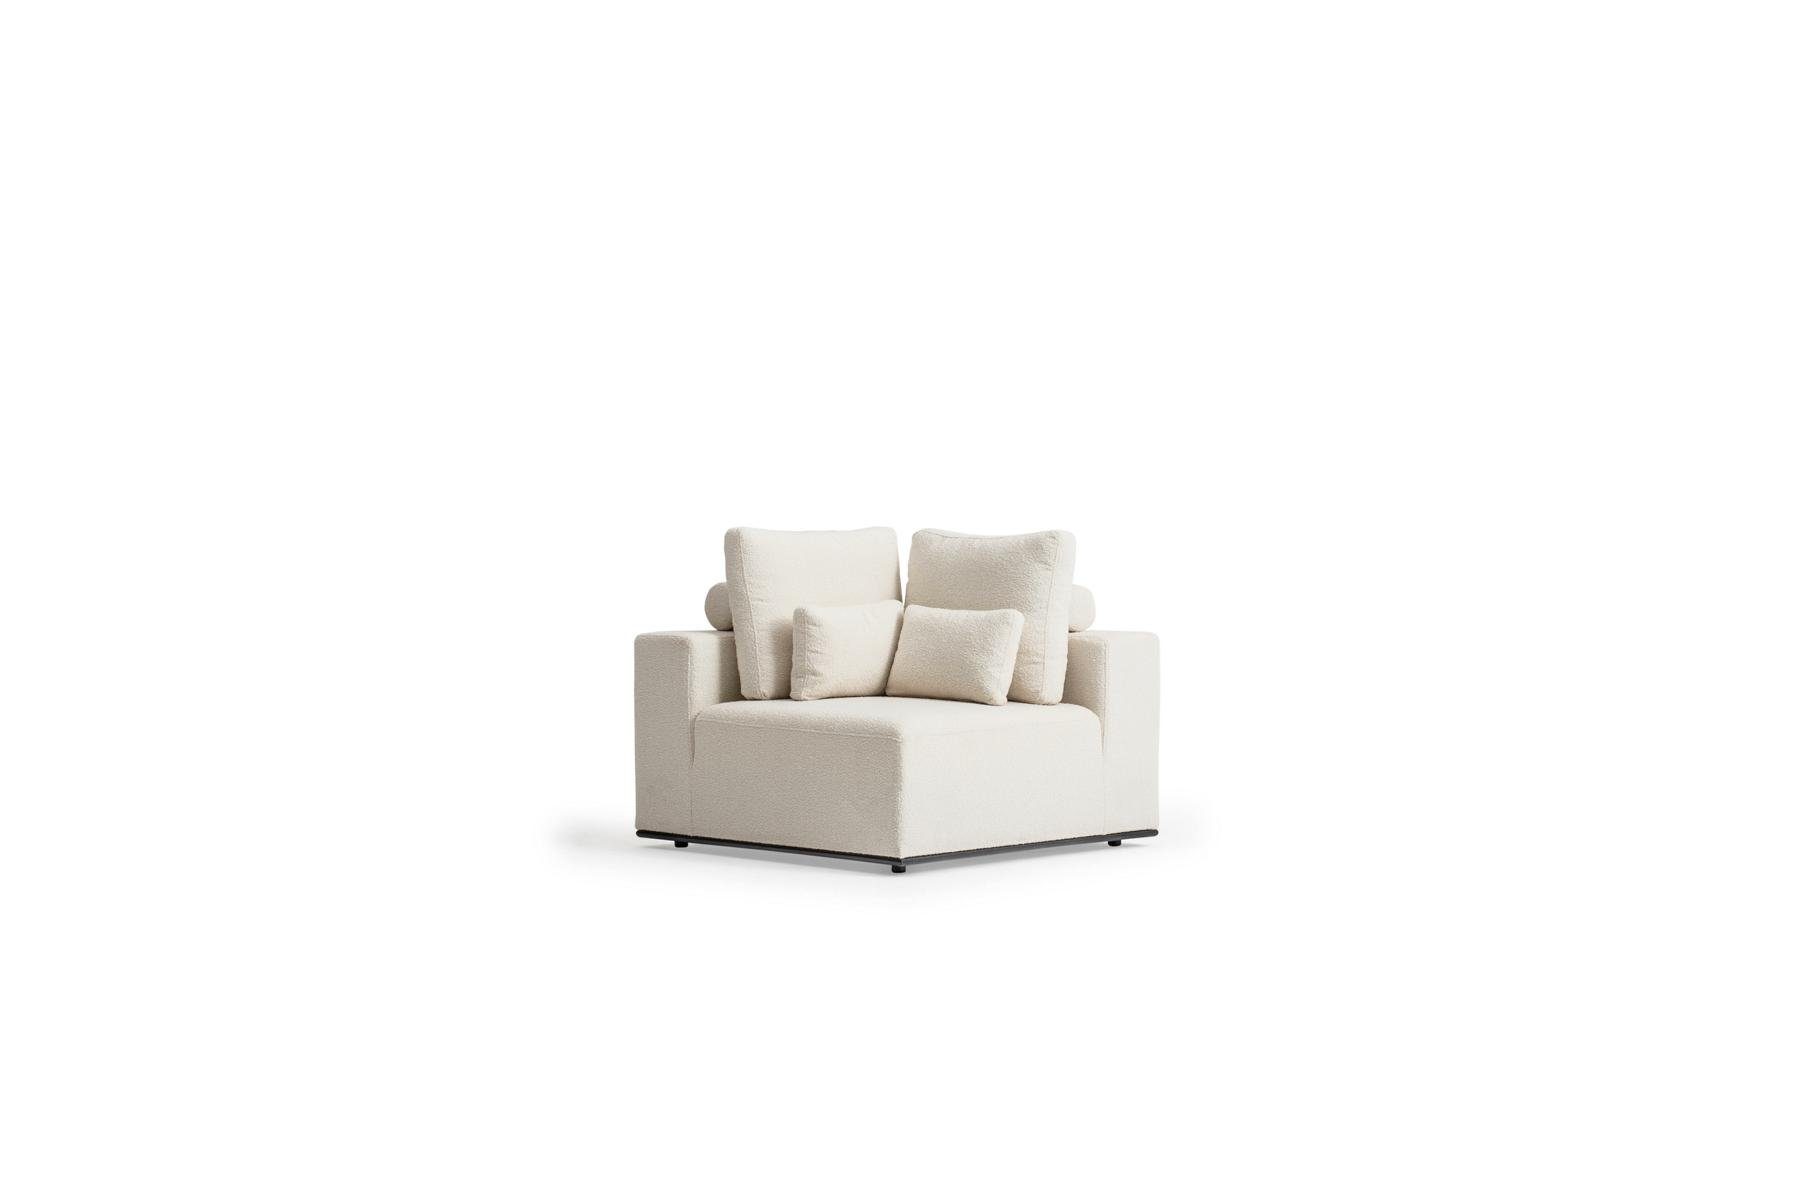 Wohnzimmerkombination L-Form Sofa, Made in Couch Modern Weiße Ecksofa JVmoebel Europe